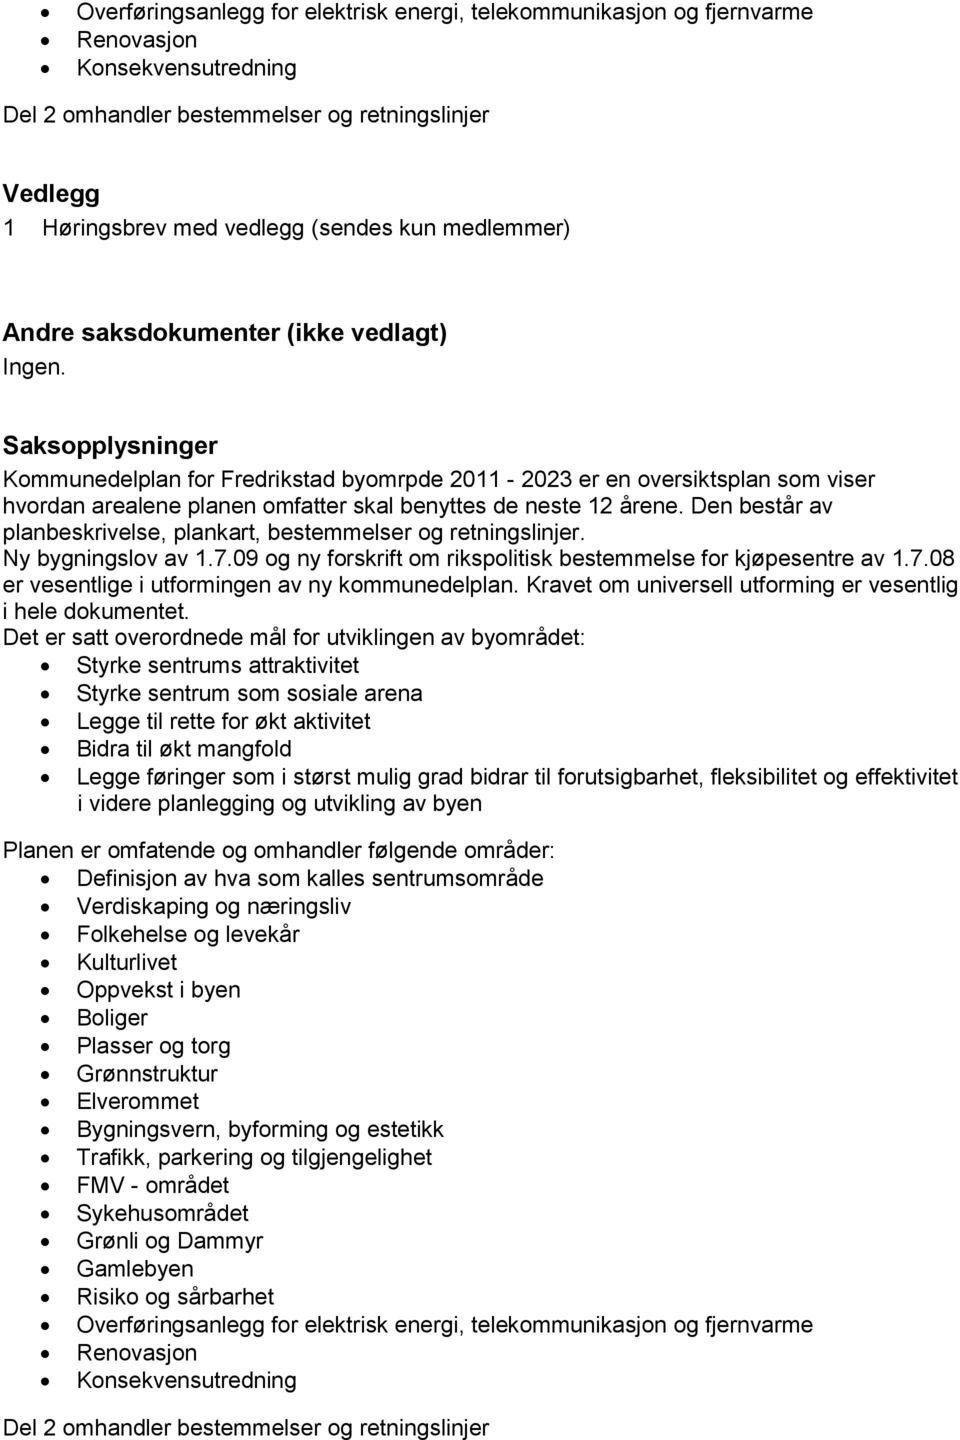 Saksopplysninger Kommunedelplan for Fredrikstad byomrpde 2011-2023 er en oversiktsplan som viser hvordan arealene planen omfatter skal benyttes de neste 12 årene.